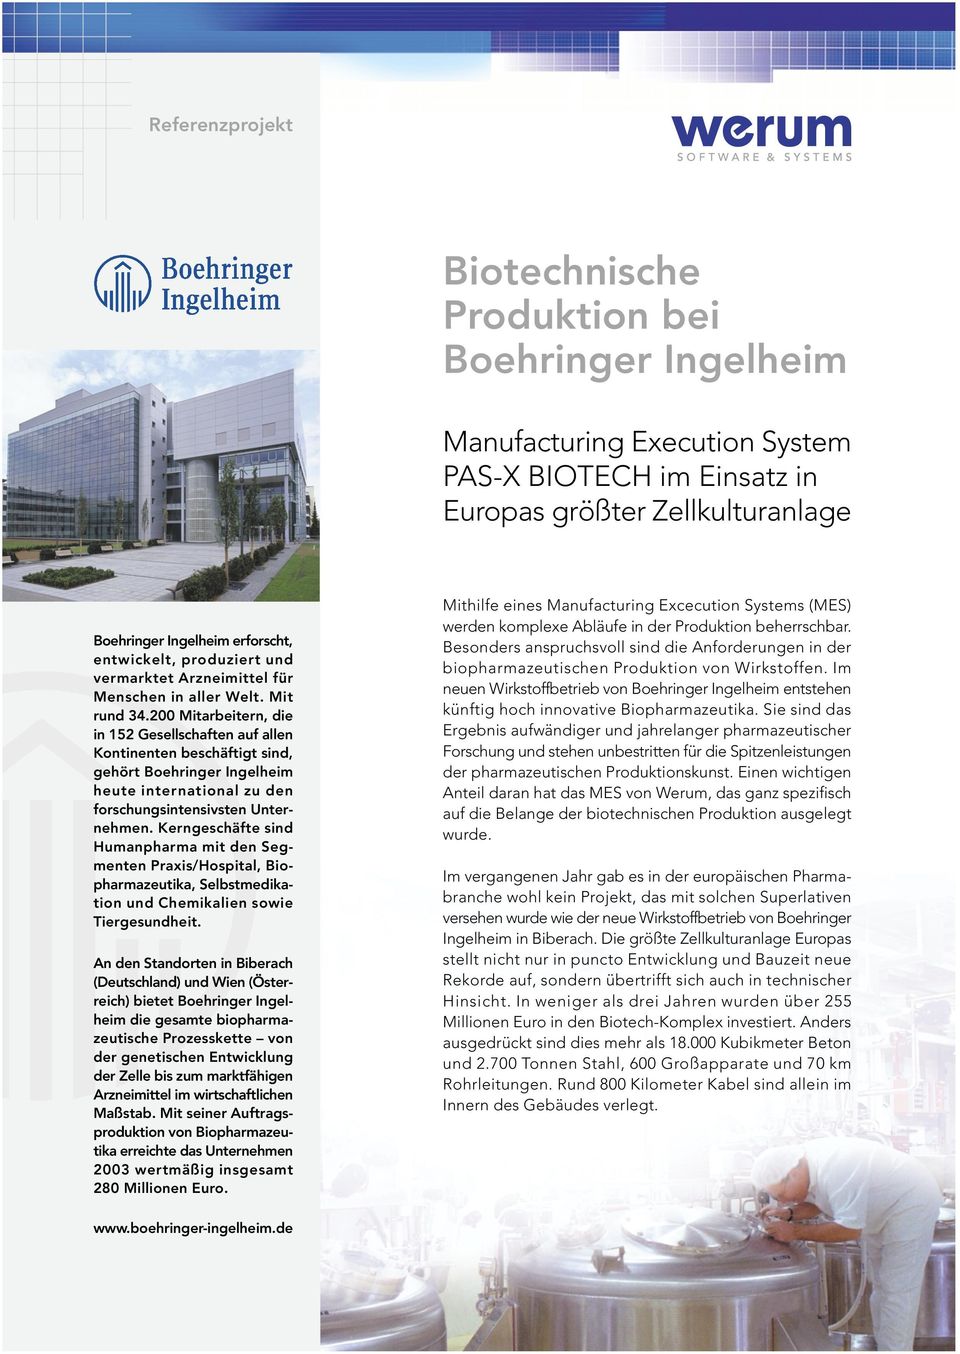 200 Mitarbeitern, die in 152 Gesellschaften auf allen Kontinenten beschäftigt sind, gehört Boehringer Ingelheim heute international zu den forschungsintensivsten Unternehmen.